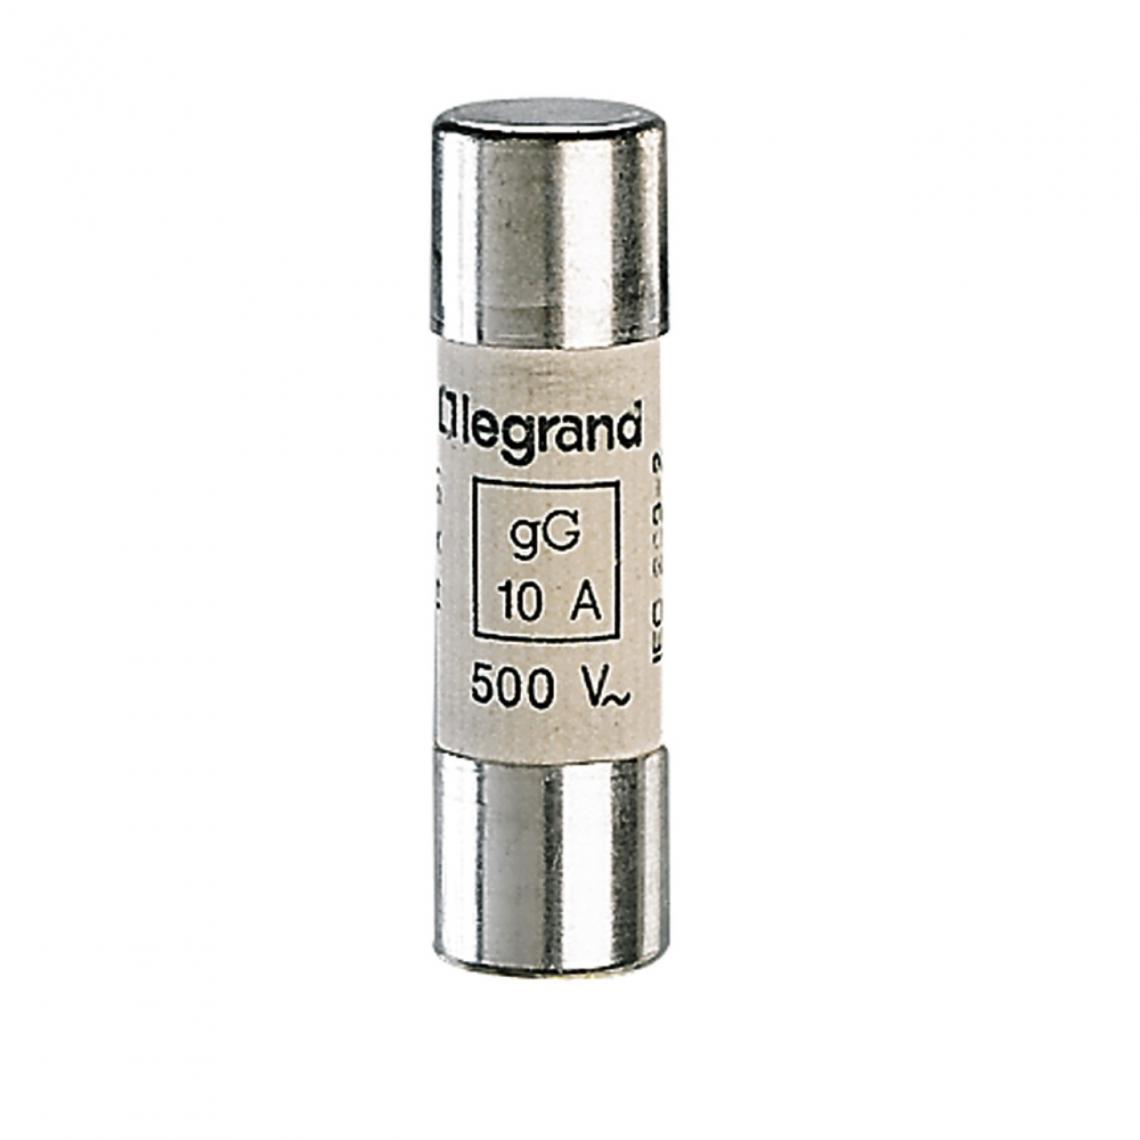 Legrand - fusible cartouche cylindrique - 14 x 51 - 10 ampères - type gg hpc - sans percuteur - Fusibles